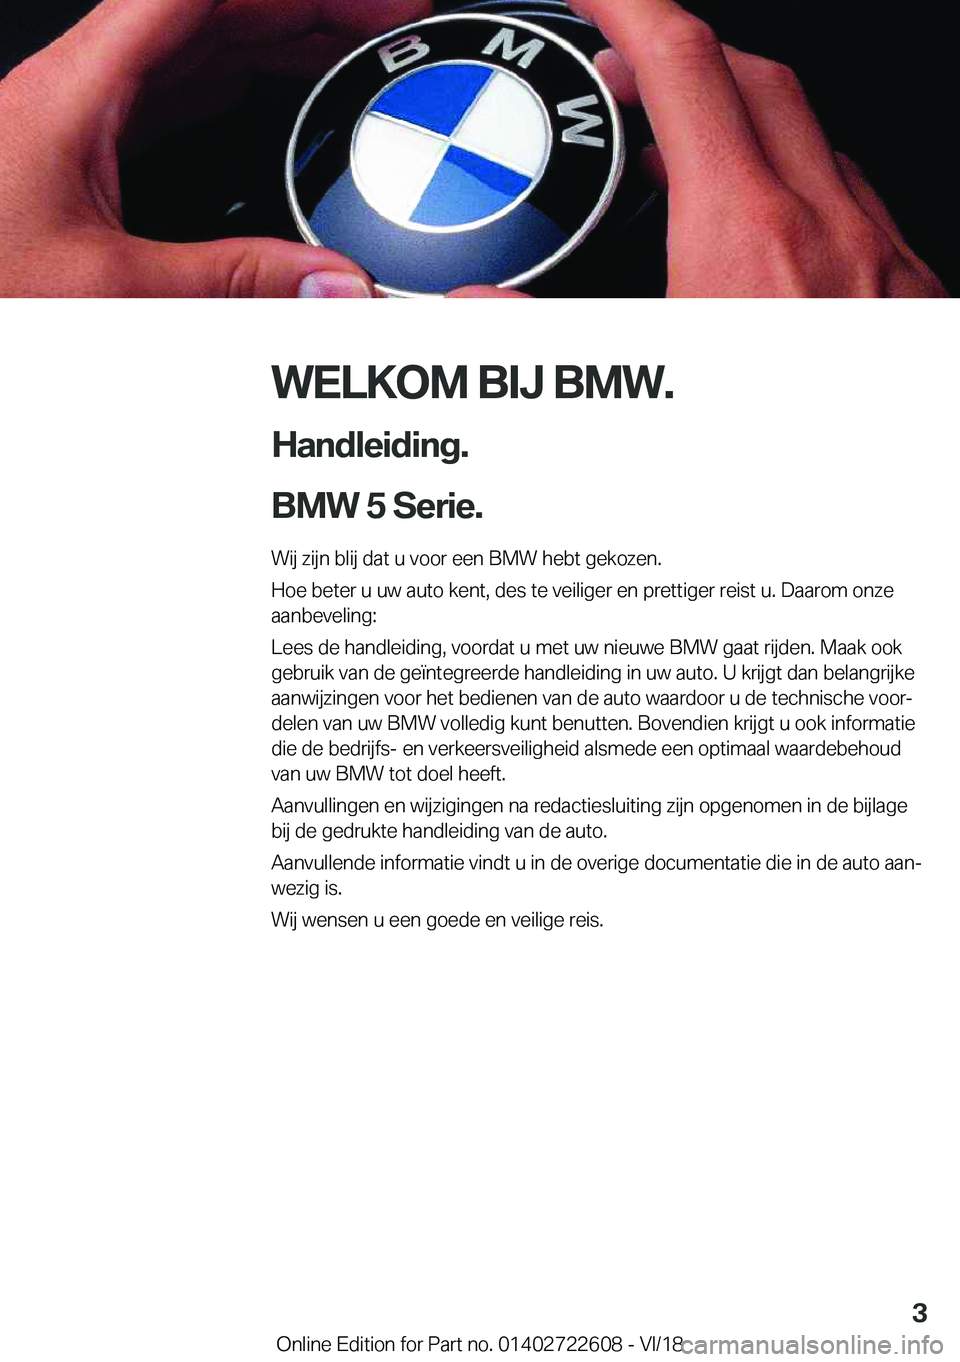 BMW 5 SERIES 2019  Instructieboekjes (in Dutch) �W�E�L�K�O�M��B�I�J��B�M�W�.
�H�a�n�d�l�e�i�d�i�n�g�.
�B�M�W��5��S�e�r�i�e�. �W�i�j��z�i�j�n��b�l�i�j��d�a�t��u��v�o�o�r��e�e�n��B�M�W��h�e�b�t��g�e�k�o�z�e�n�.
�H�o�e��b�e�t�e�r��u��u